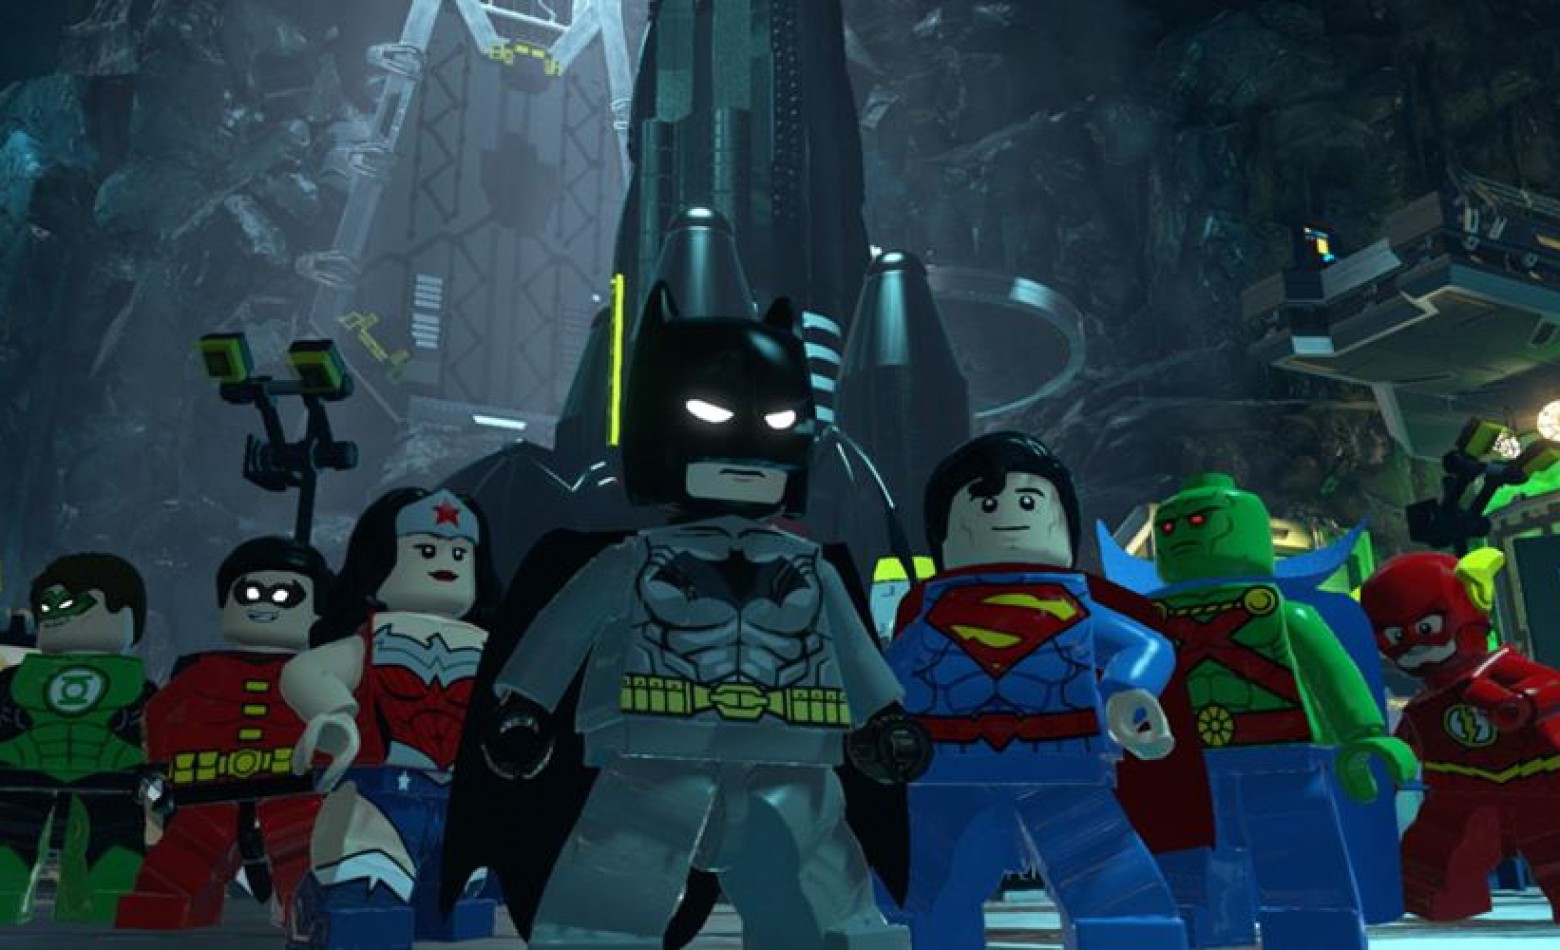 Atores de “Porta dos Fundos” vão dublar LEGO Batman 3